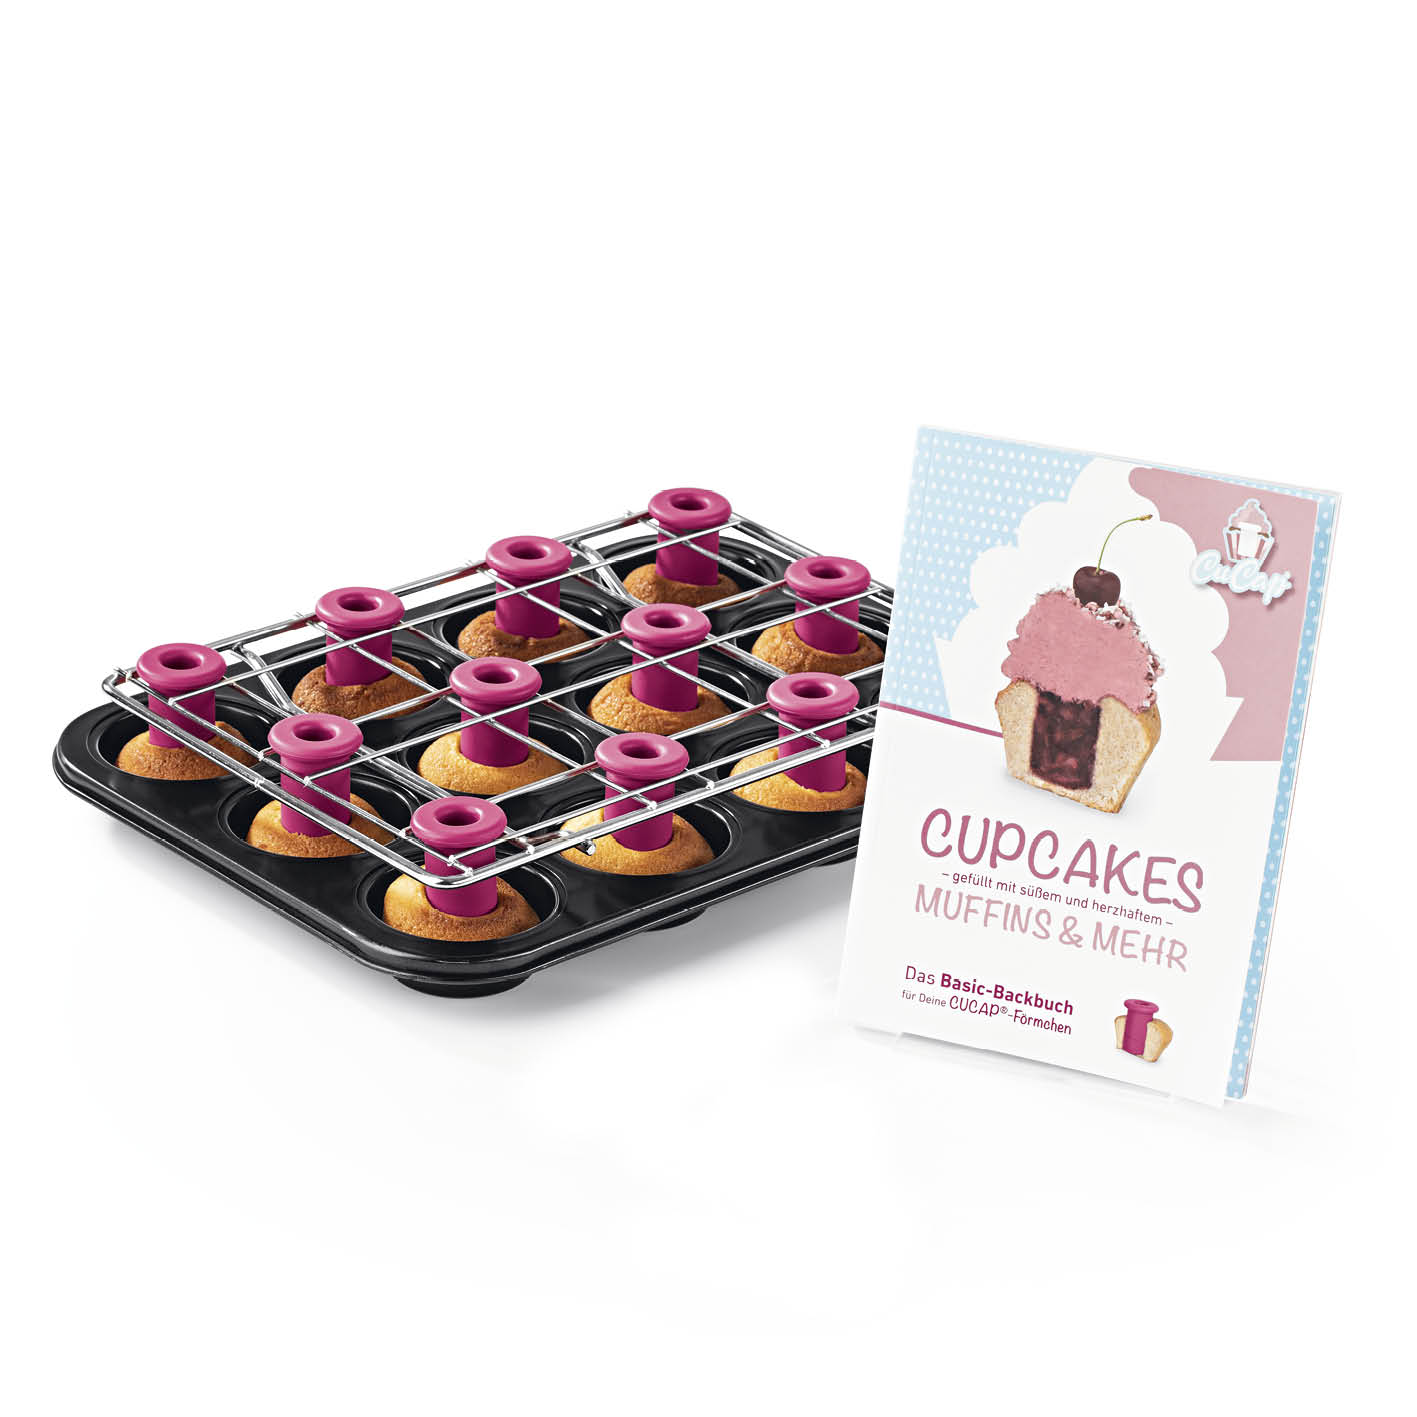 CuCap Back-Set für Cupcakes, Muffins & Mehr